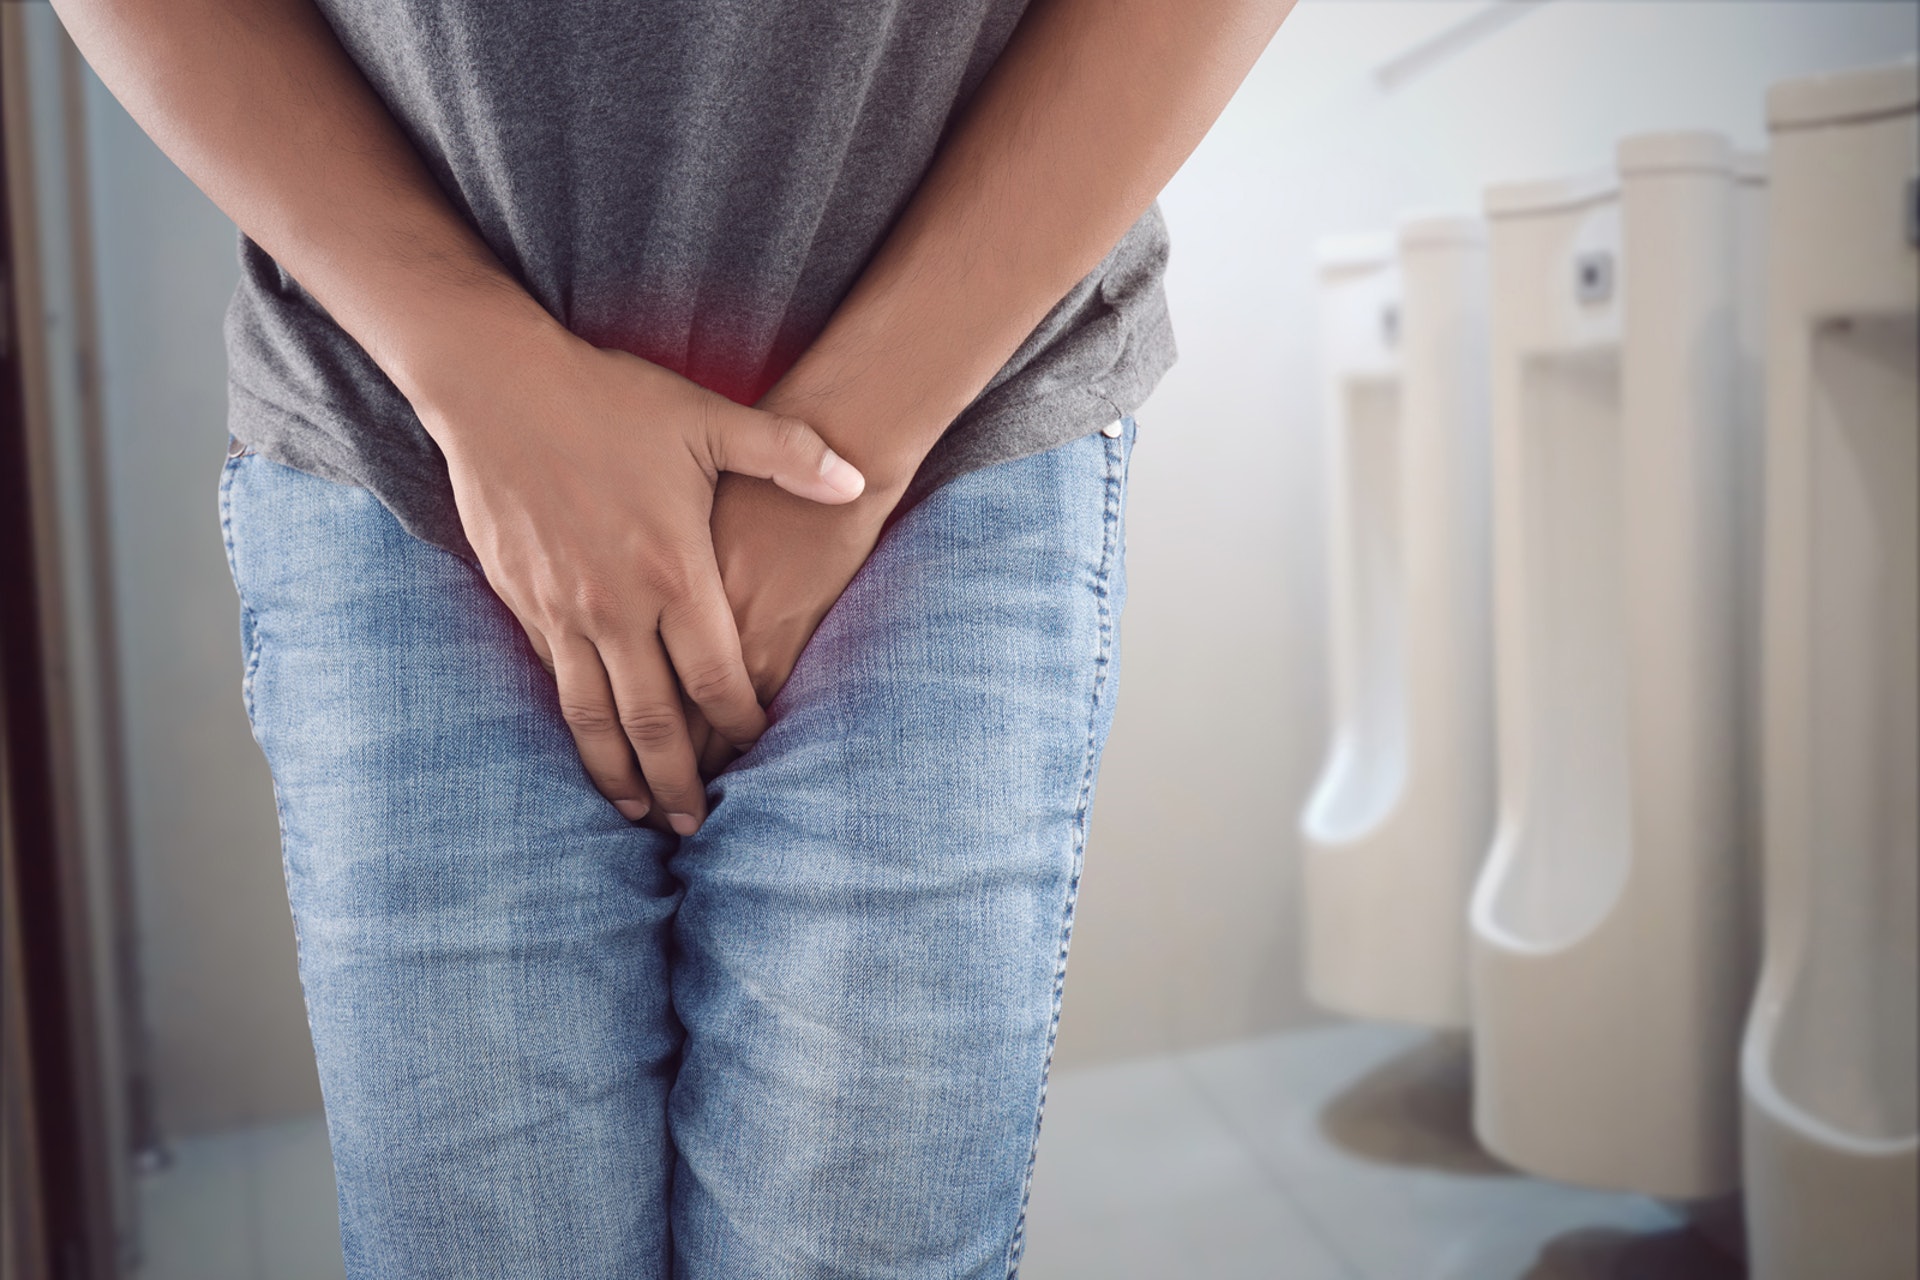 許多中年人會有漏尿、尿不乾淨或尿失禁等情況，排尿困擾引起泌尿道感染或排尿困難，進而導致身體散發出特殊的氣味。（示意圖/Getty Images）